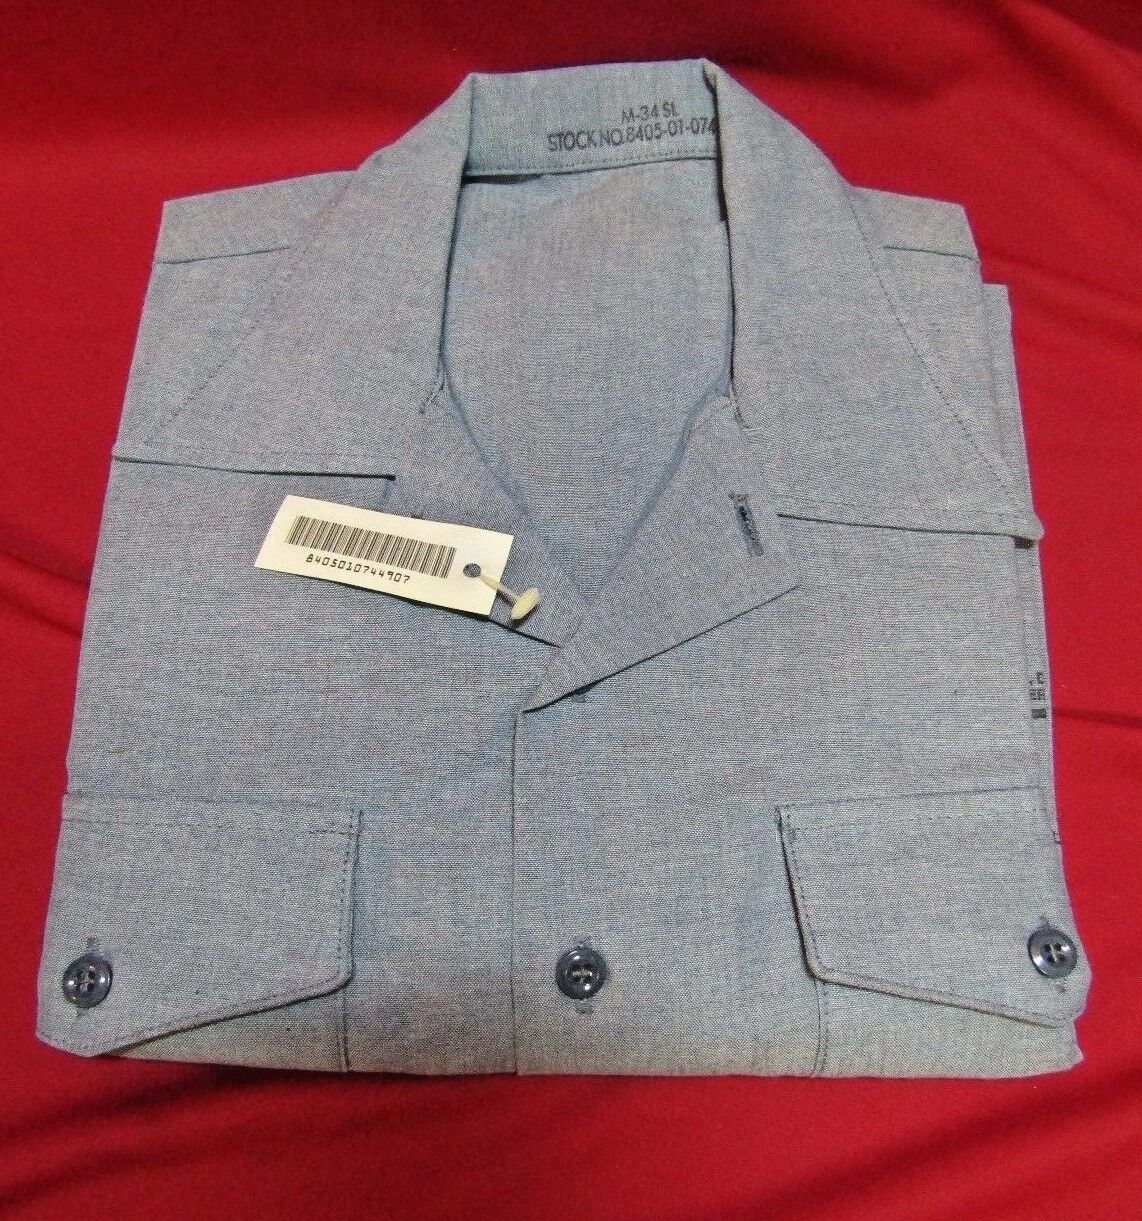 NOS USN Poly/Cotton Chambray Long Sleeve Shirt Blue Shade #3372 M-34SL NWT